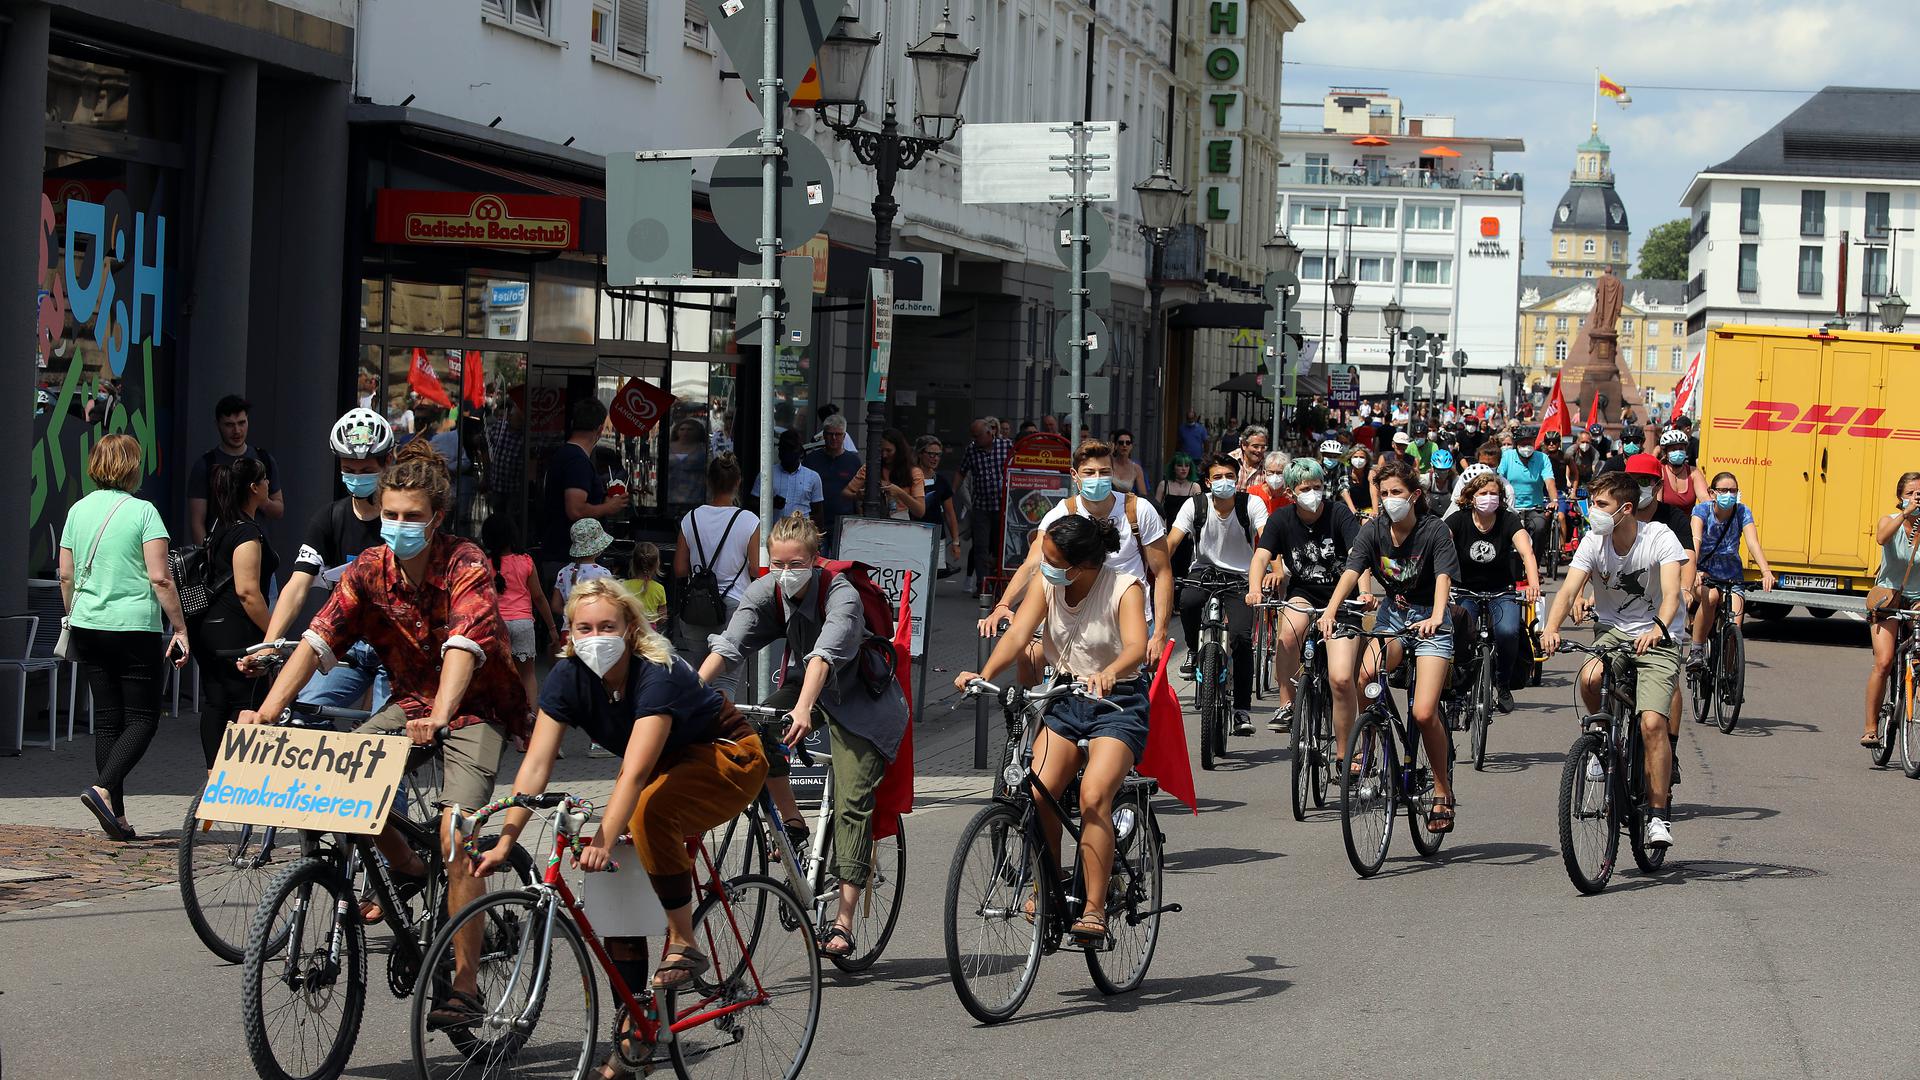 Ein Zeichen für den Klimaschutz: Das Klimakollektiv Karlsruhe veranstaltete am Samstag eine Aktion mit gemeinsamer Fahrradtour. Grund dafür waren die steigenden Preise für die Bus- und Bahntickets in Karlsruhe.